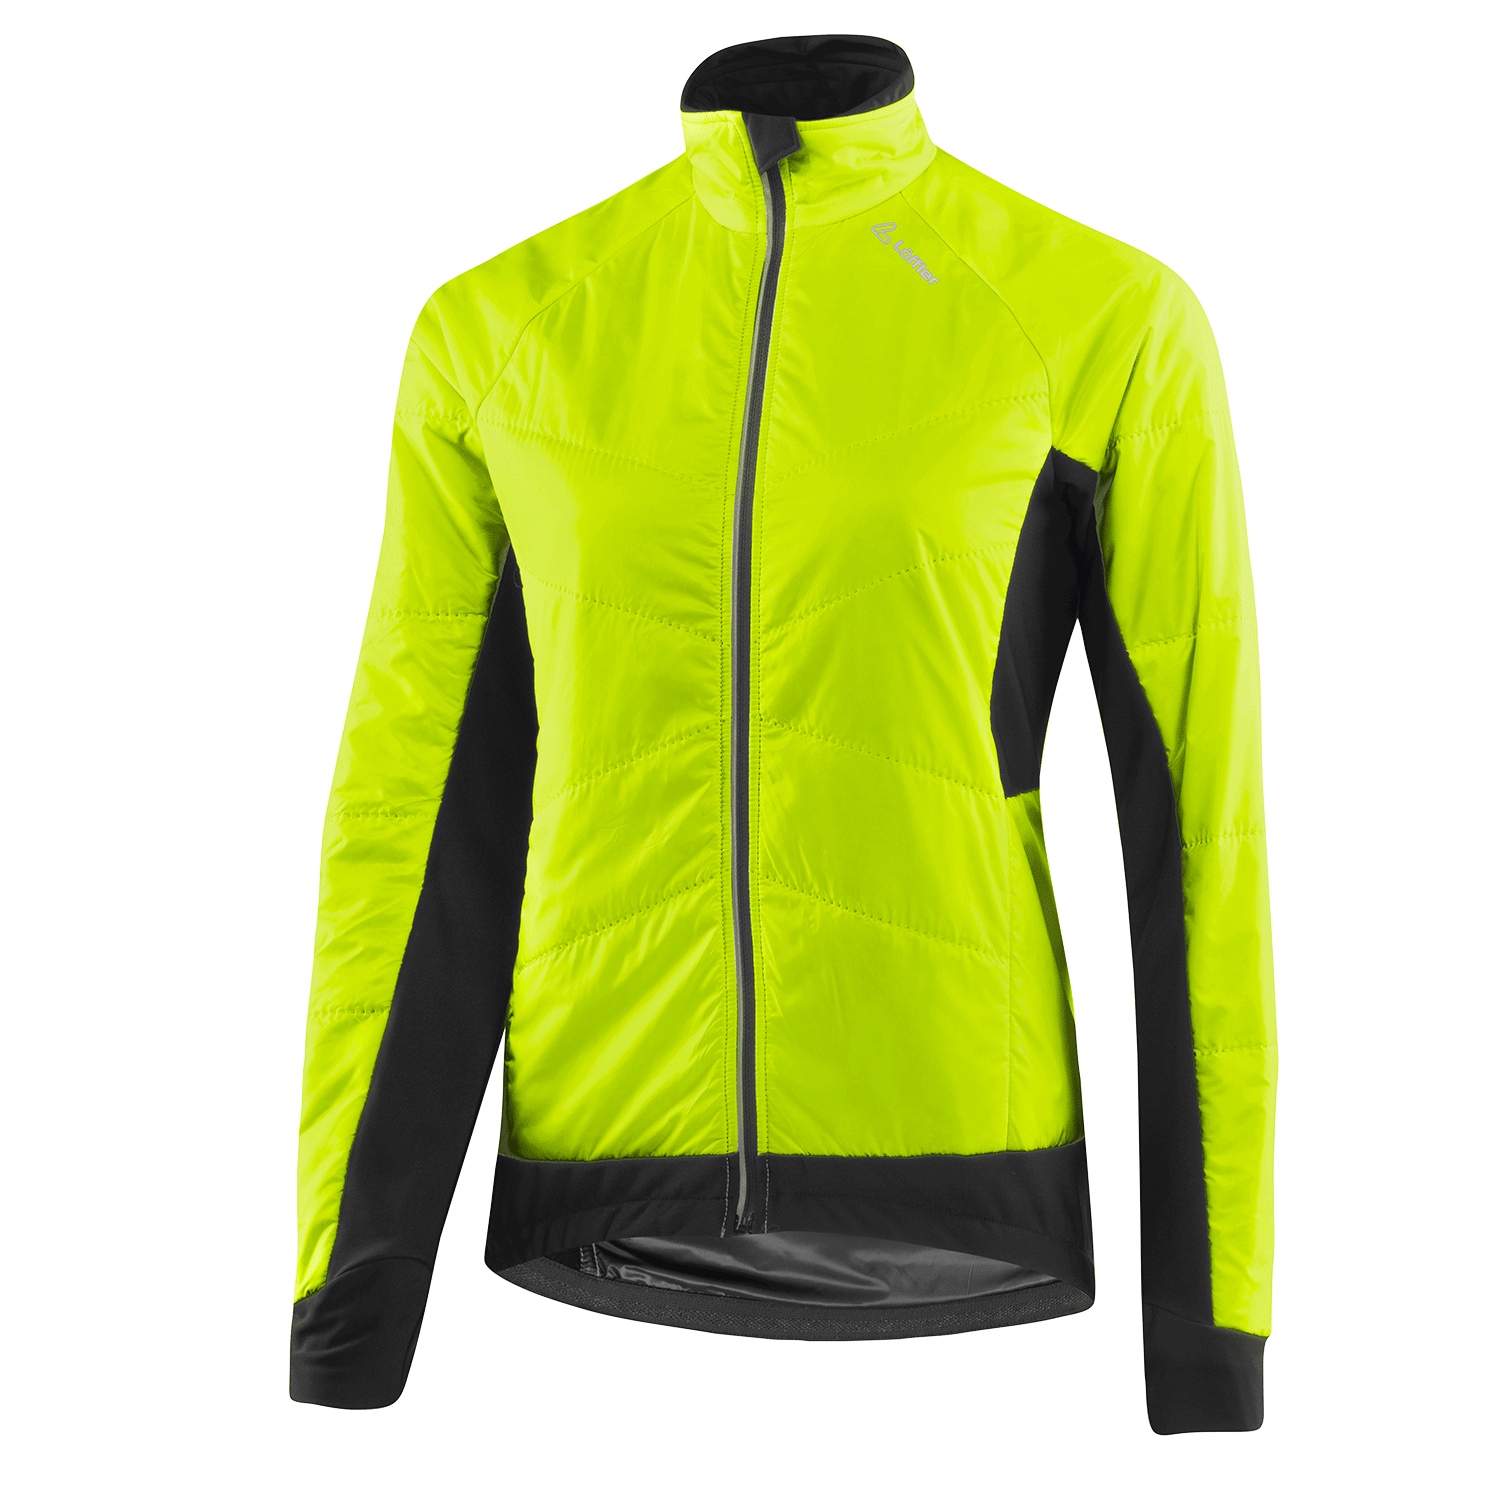 Immagine prodotto da Löffler Giacca Ciclismo Termica Donna - Hotbond® Primaloft 60 - giallo neon 200